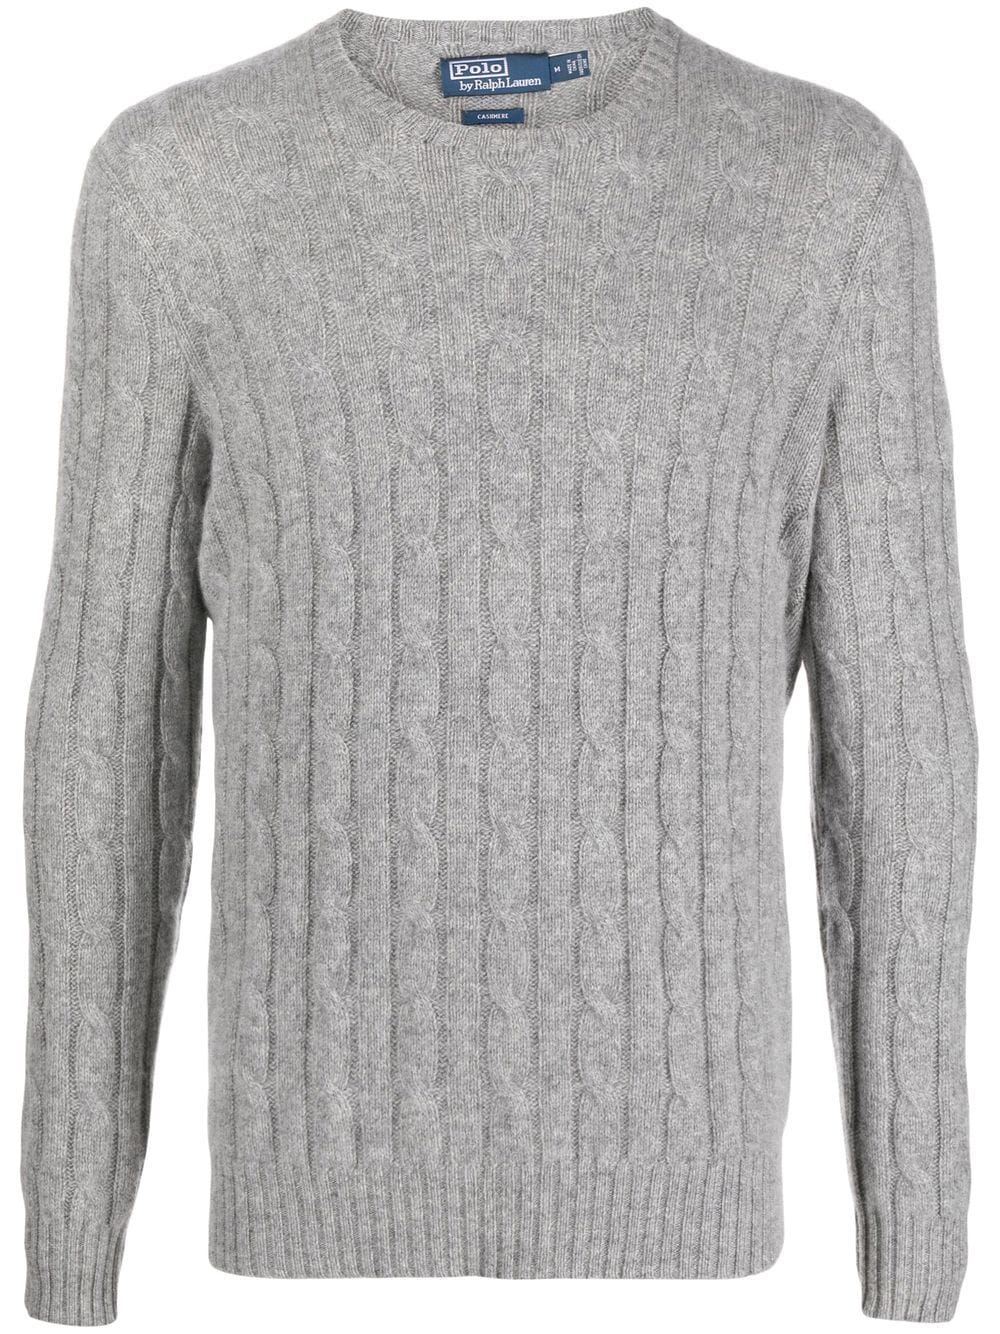 Polo Ralph Lauren cable-knit cashmere jumper - Grey von Polo Ralph Lauren